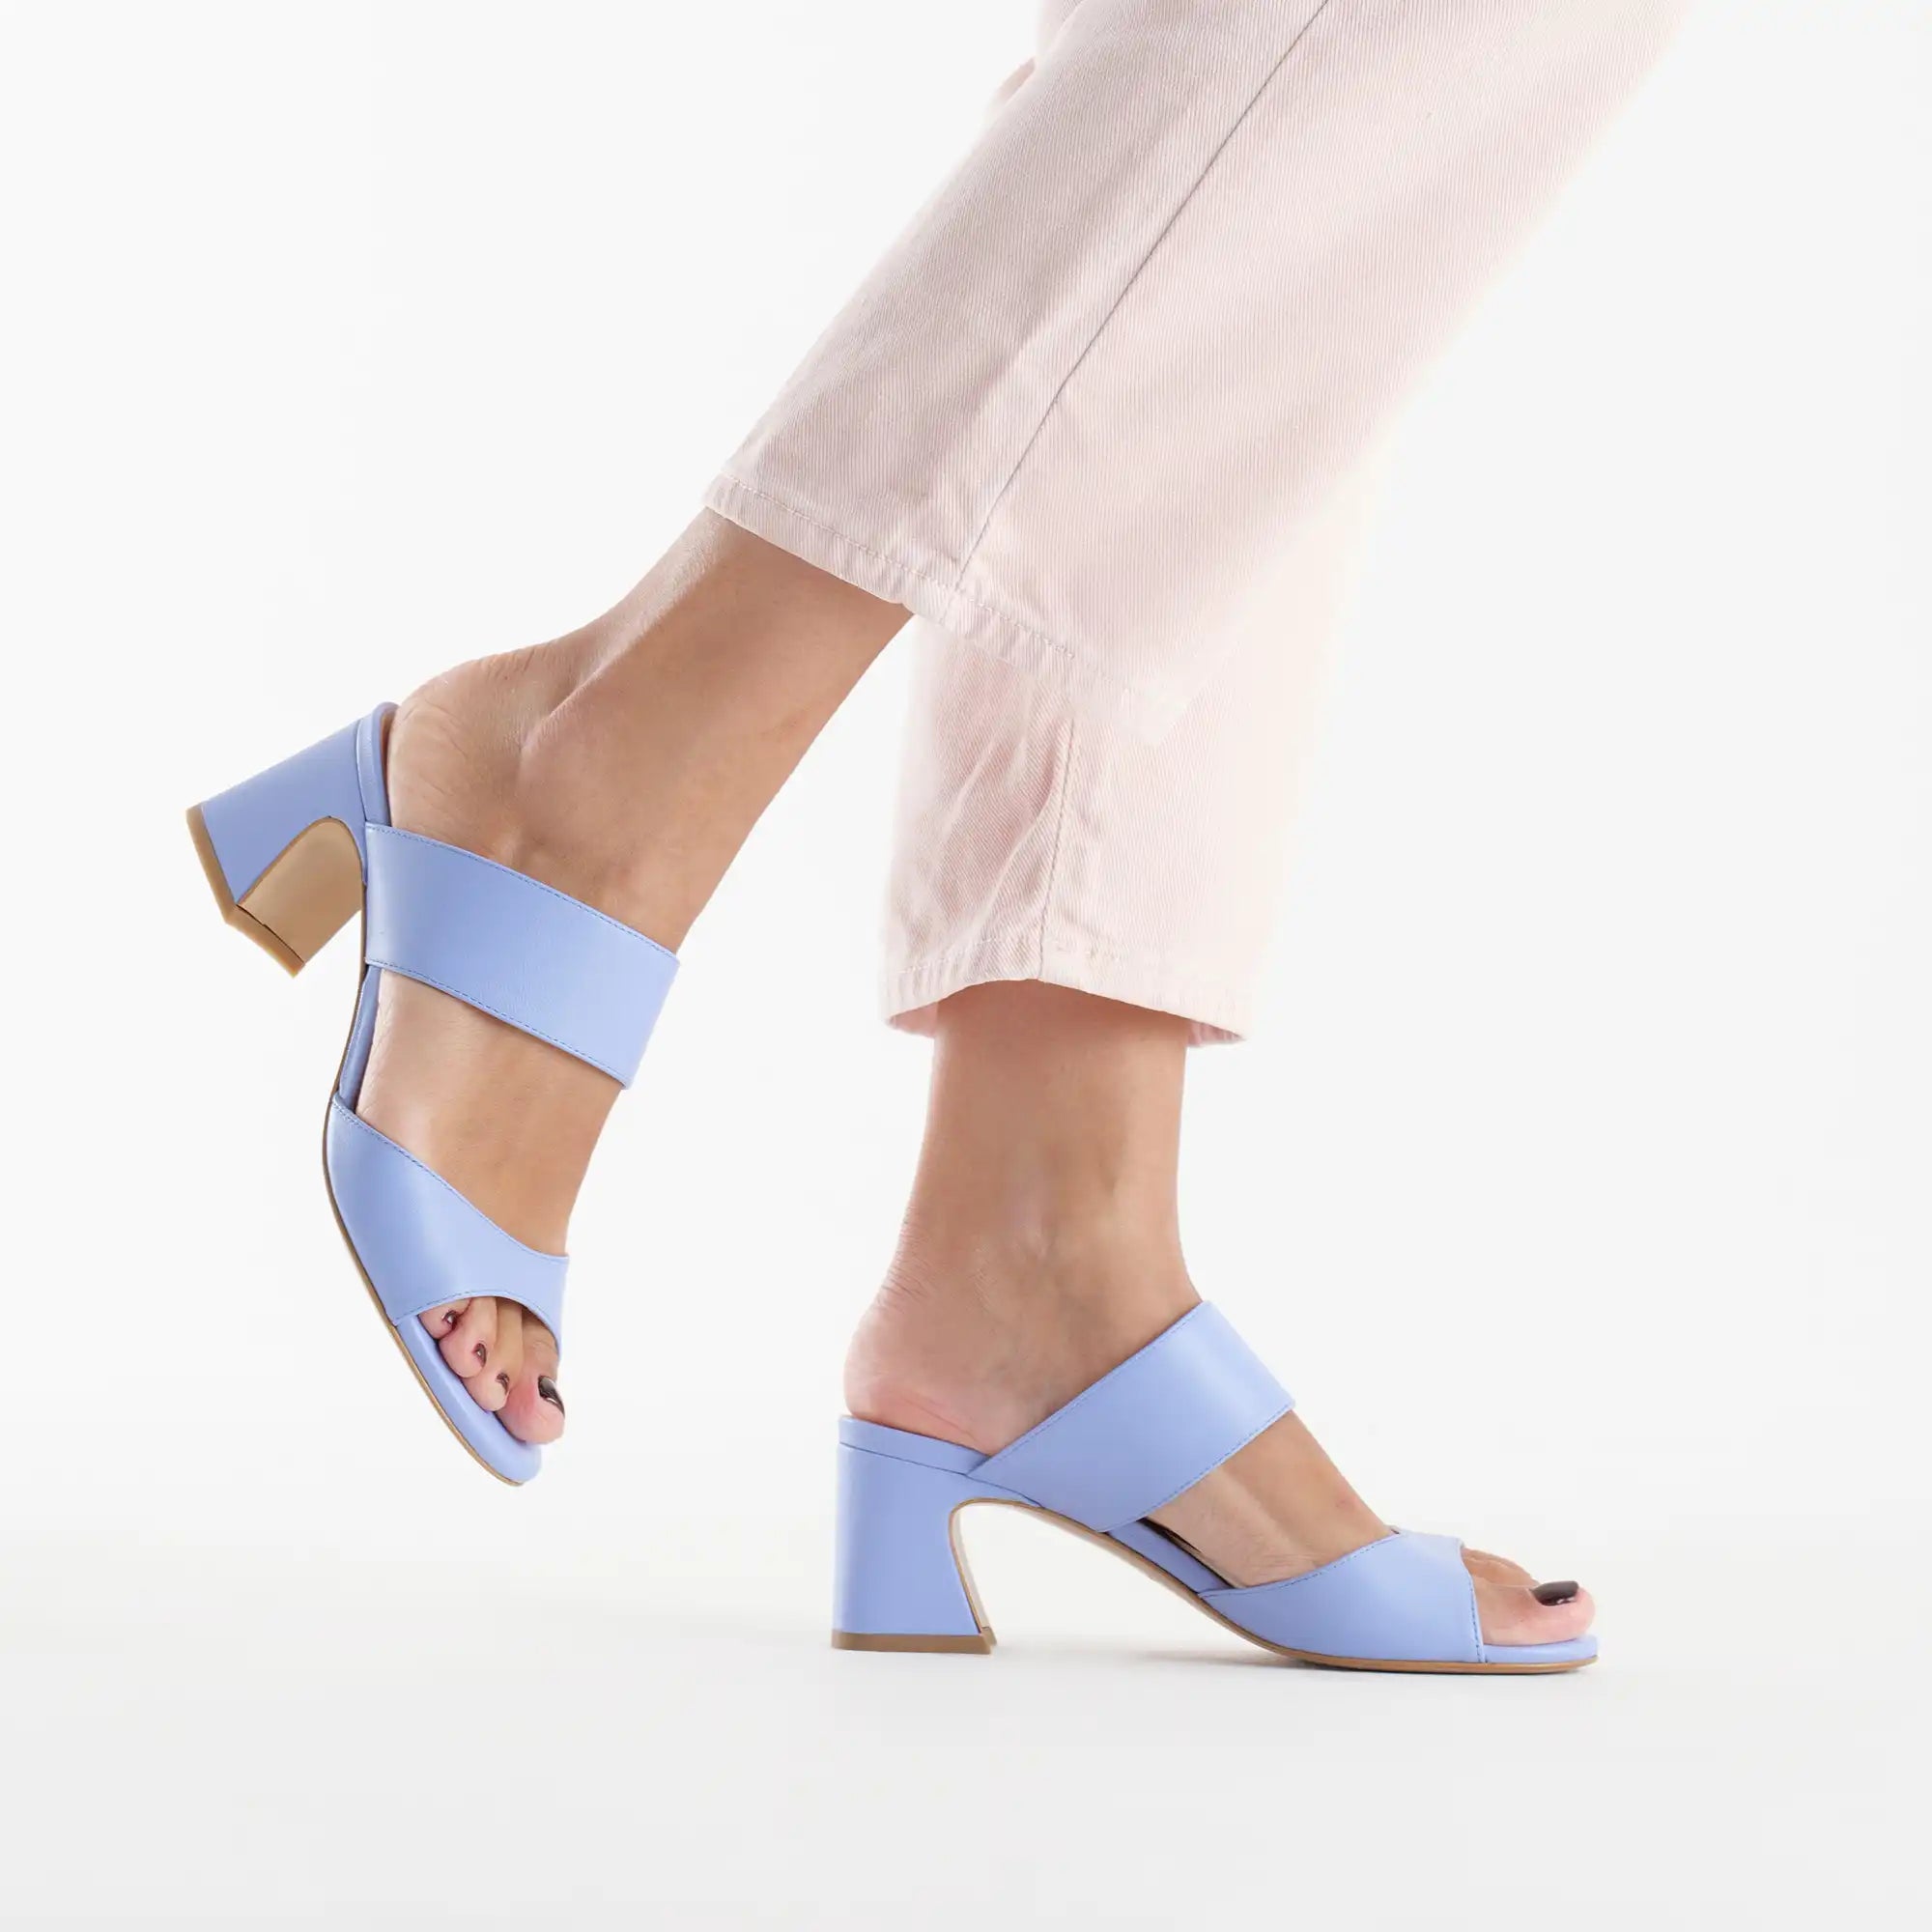 Sandalo Elle mules tacco basso largo con fascia su collo piede in pelle azzurro polvere